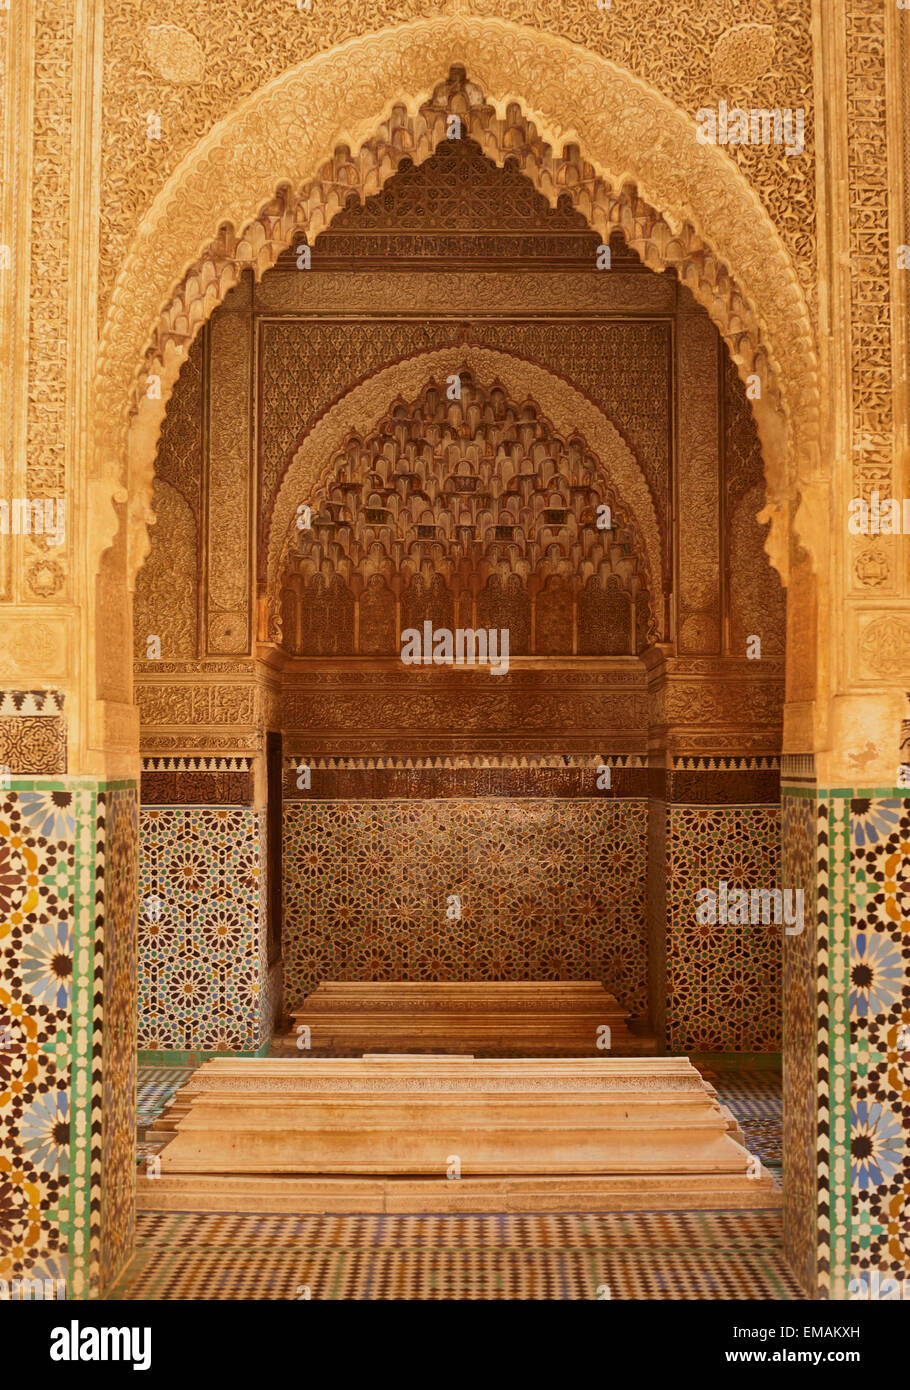 Porte de pierre sculptés ornés d'azulejos, Palais Bahia, Marrakech, Maroc Banque D'Images